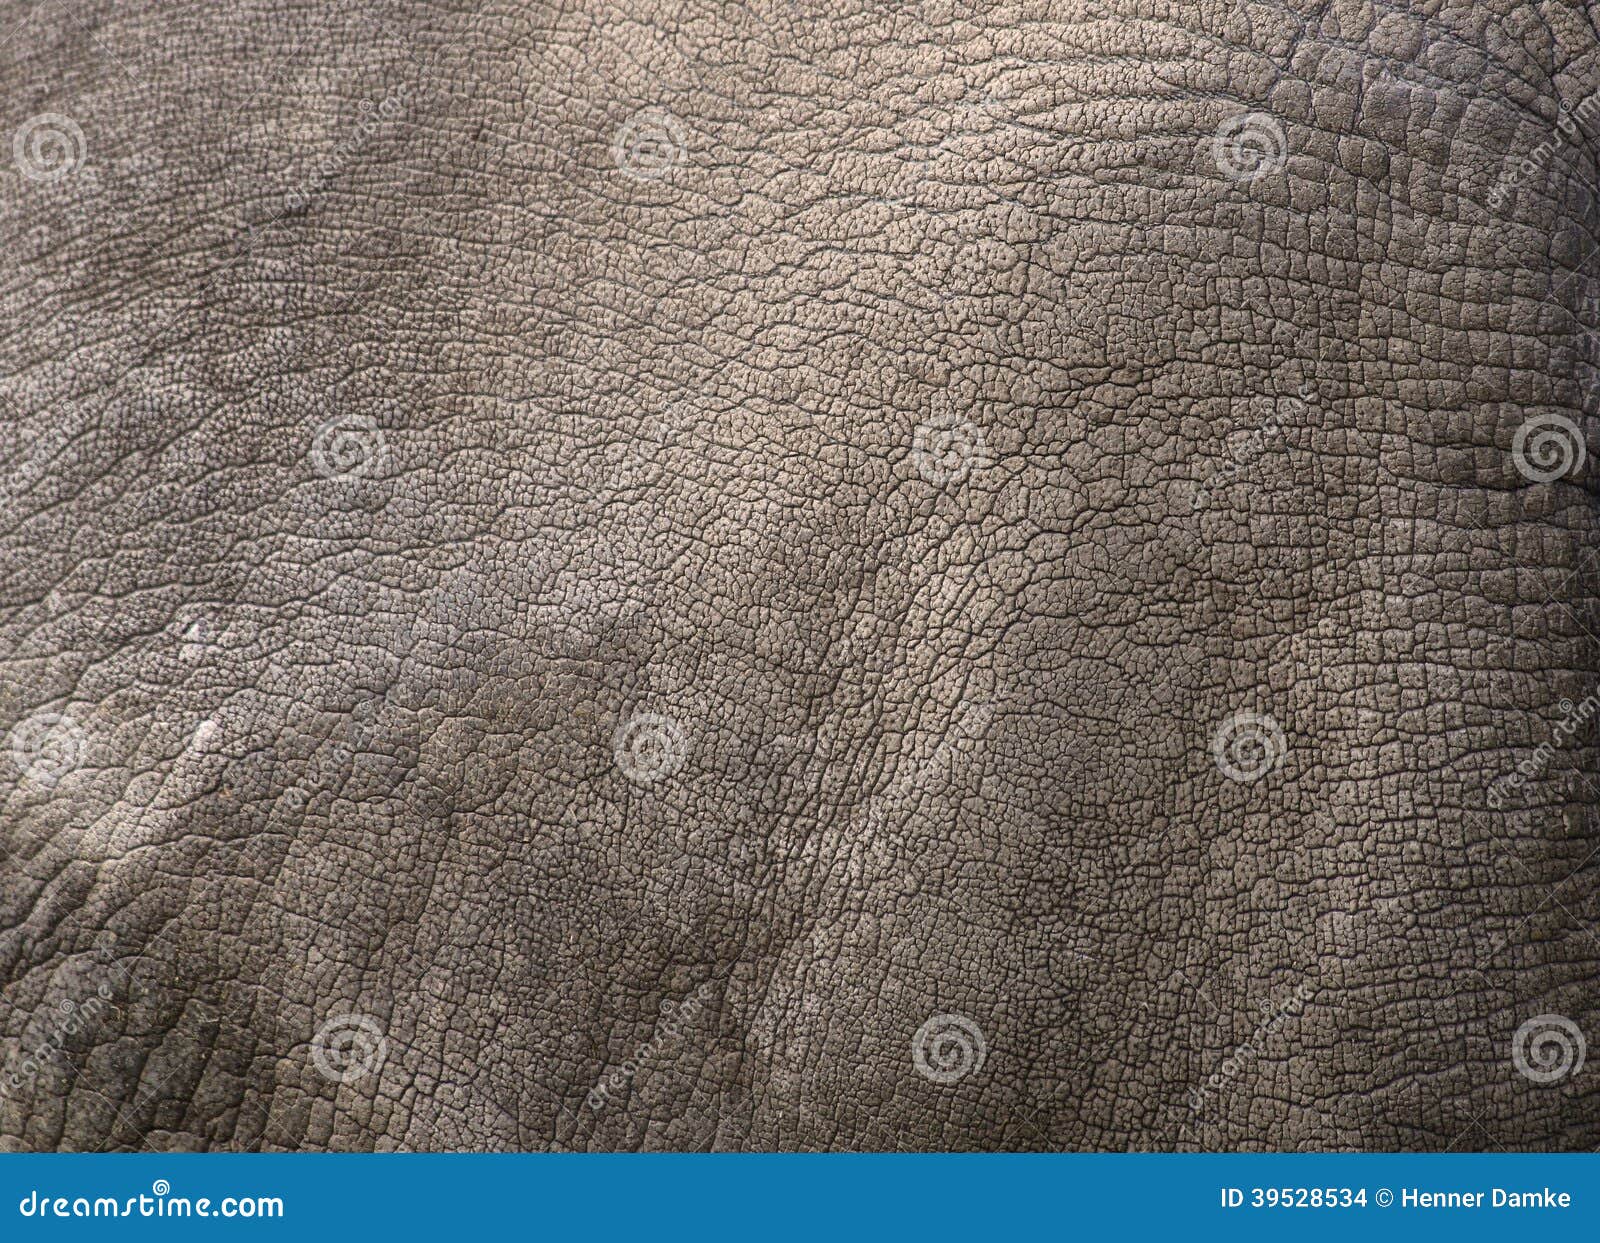 close up view of rhino skin